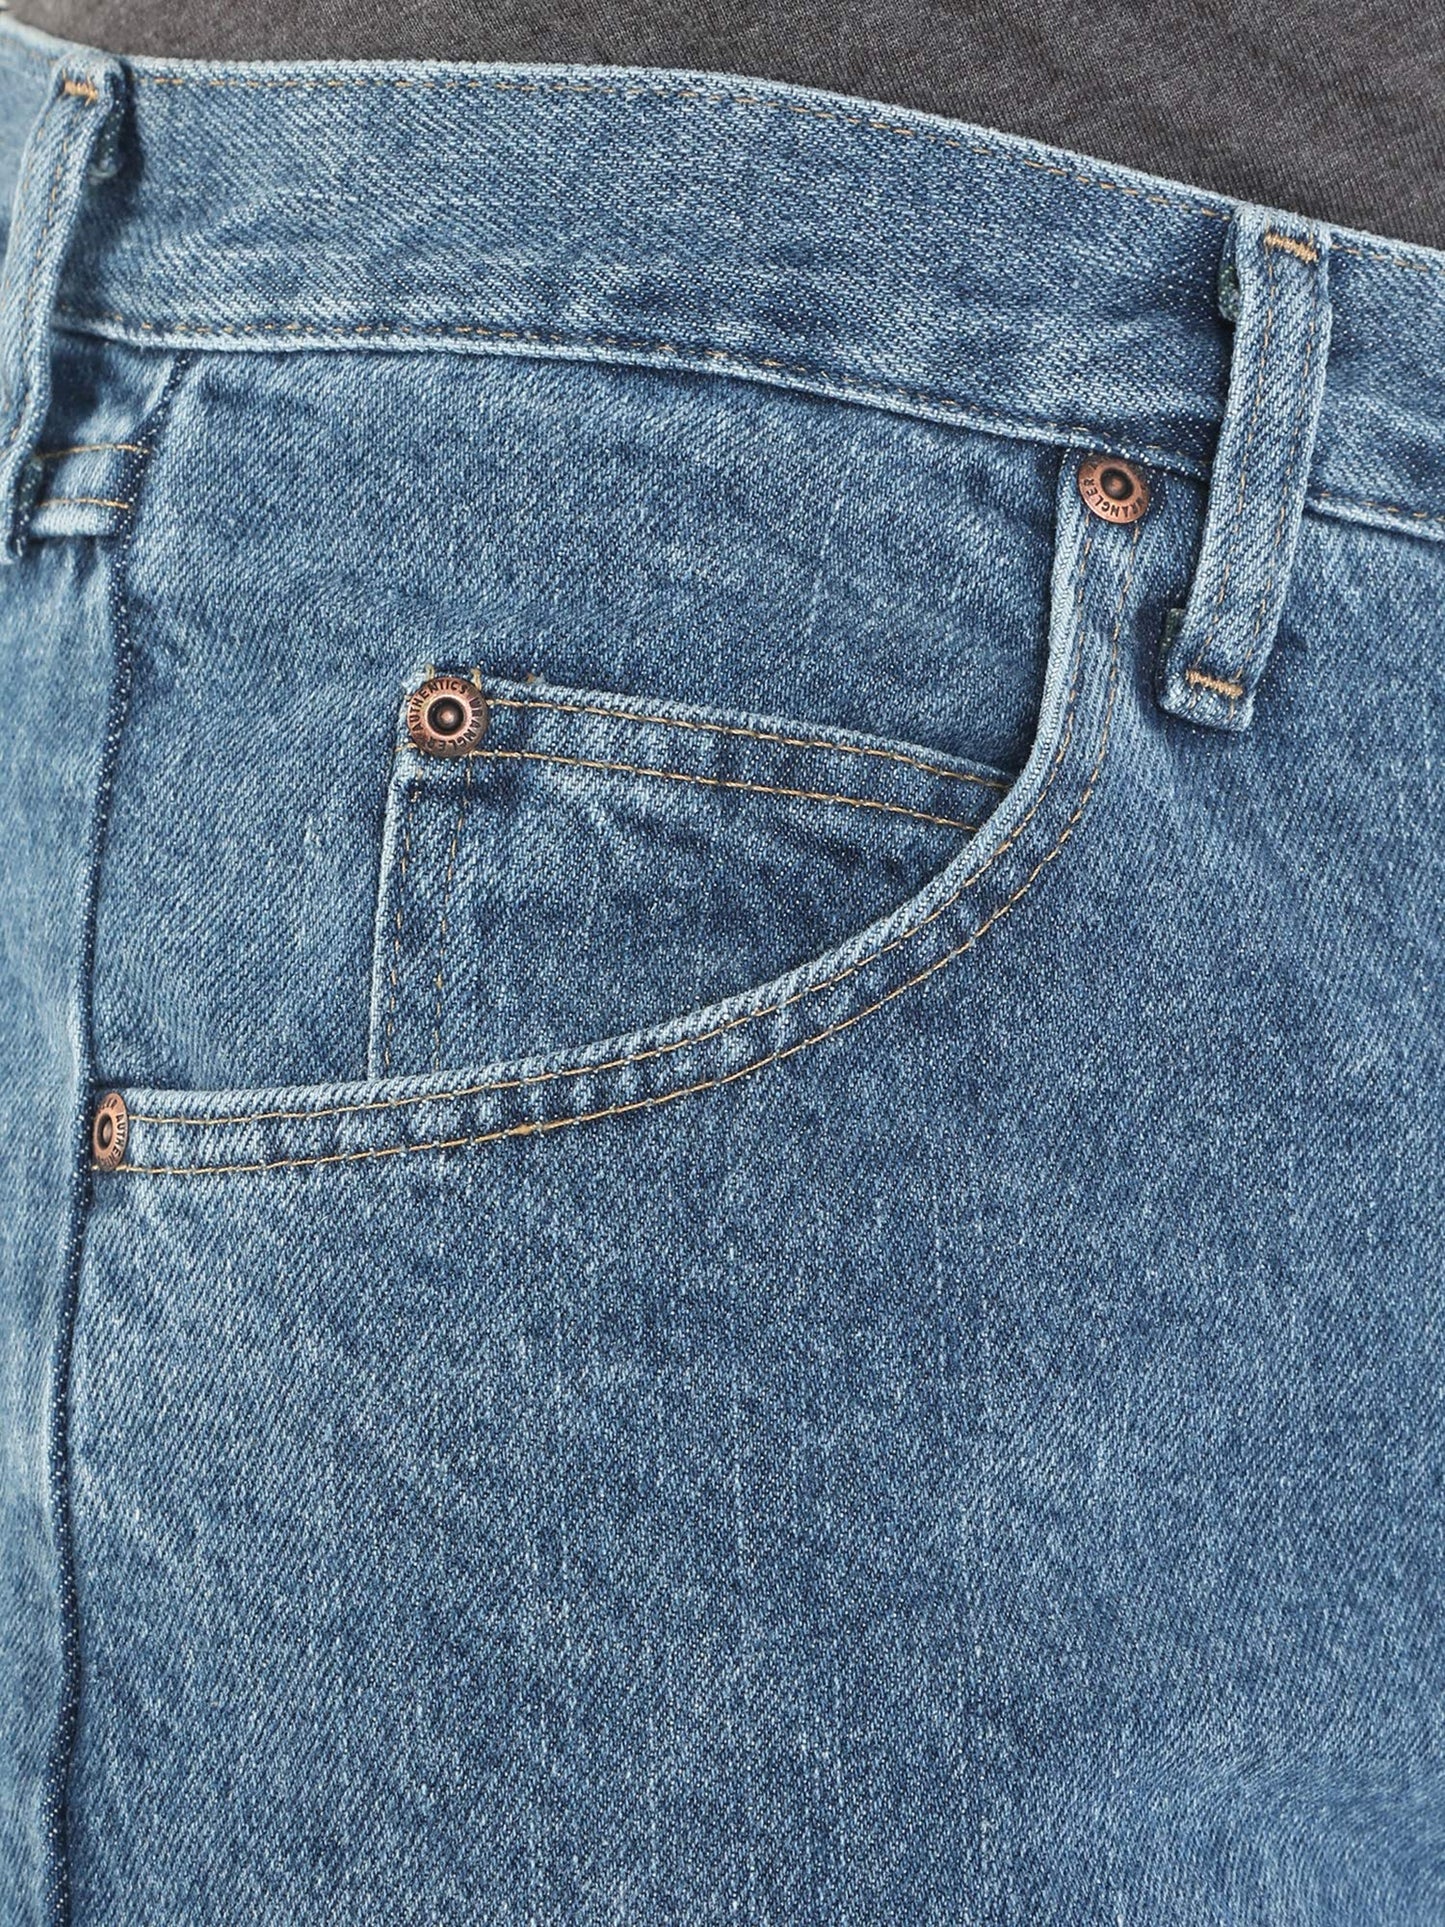 Wrangler Authentics Men's Classic 5-Pocket Relaxed Fit Cotton Jean, Vintage Stonewash, 38W x 30L